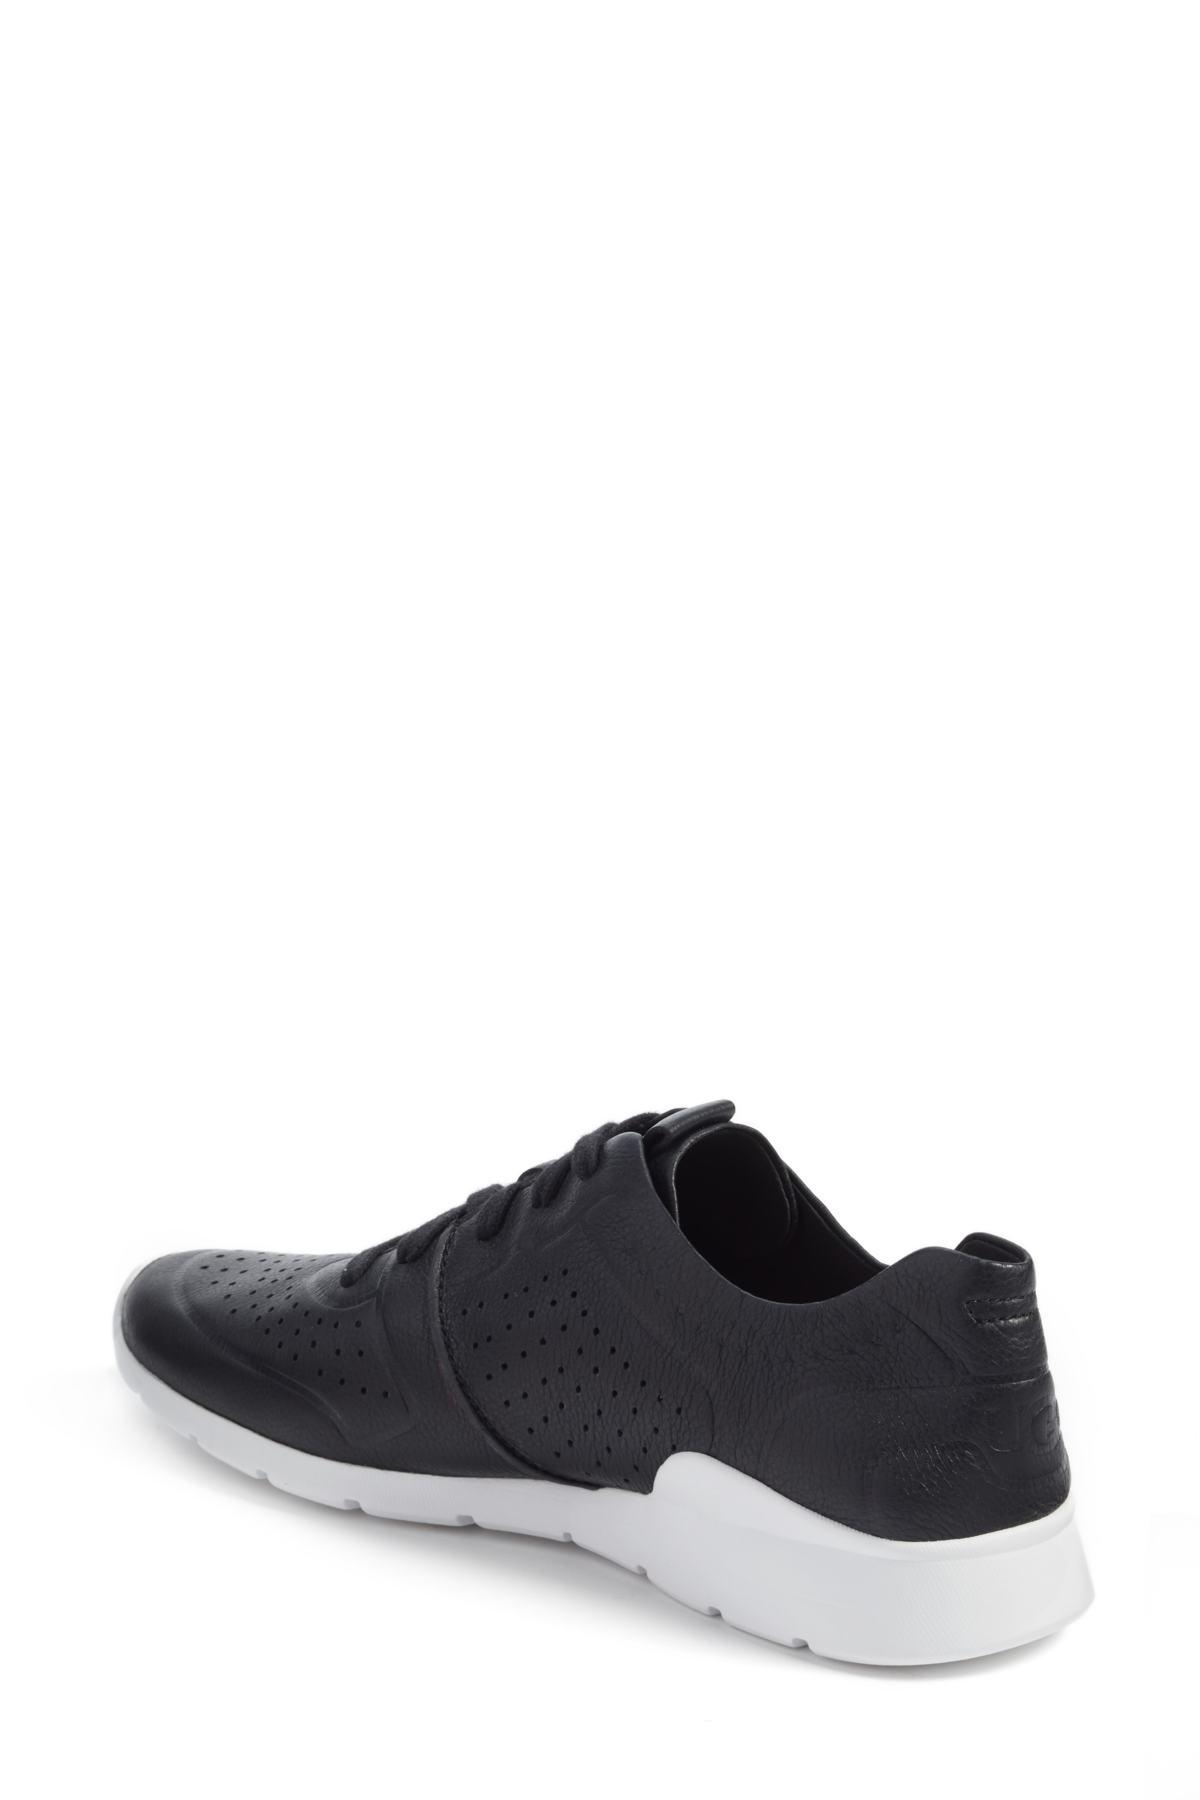 UGG Leather Tye Sneaker in Black | Lyst